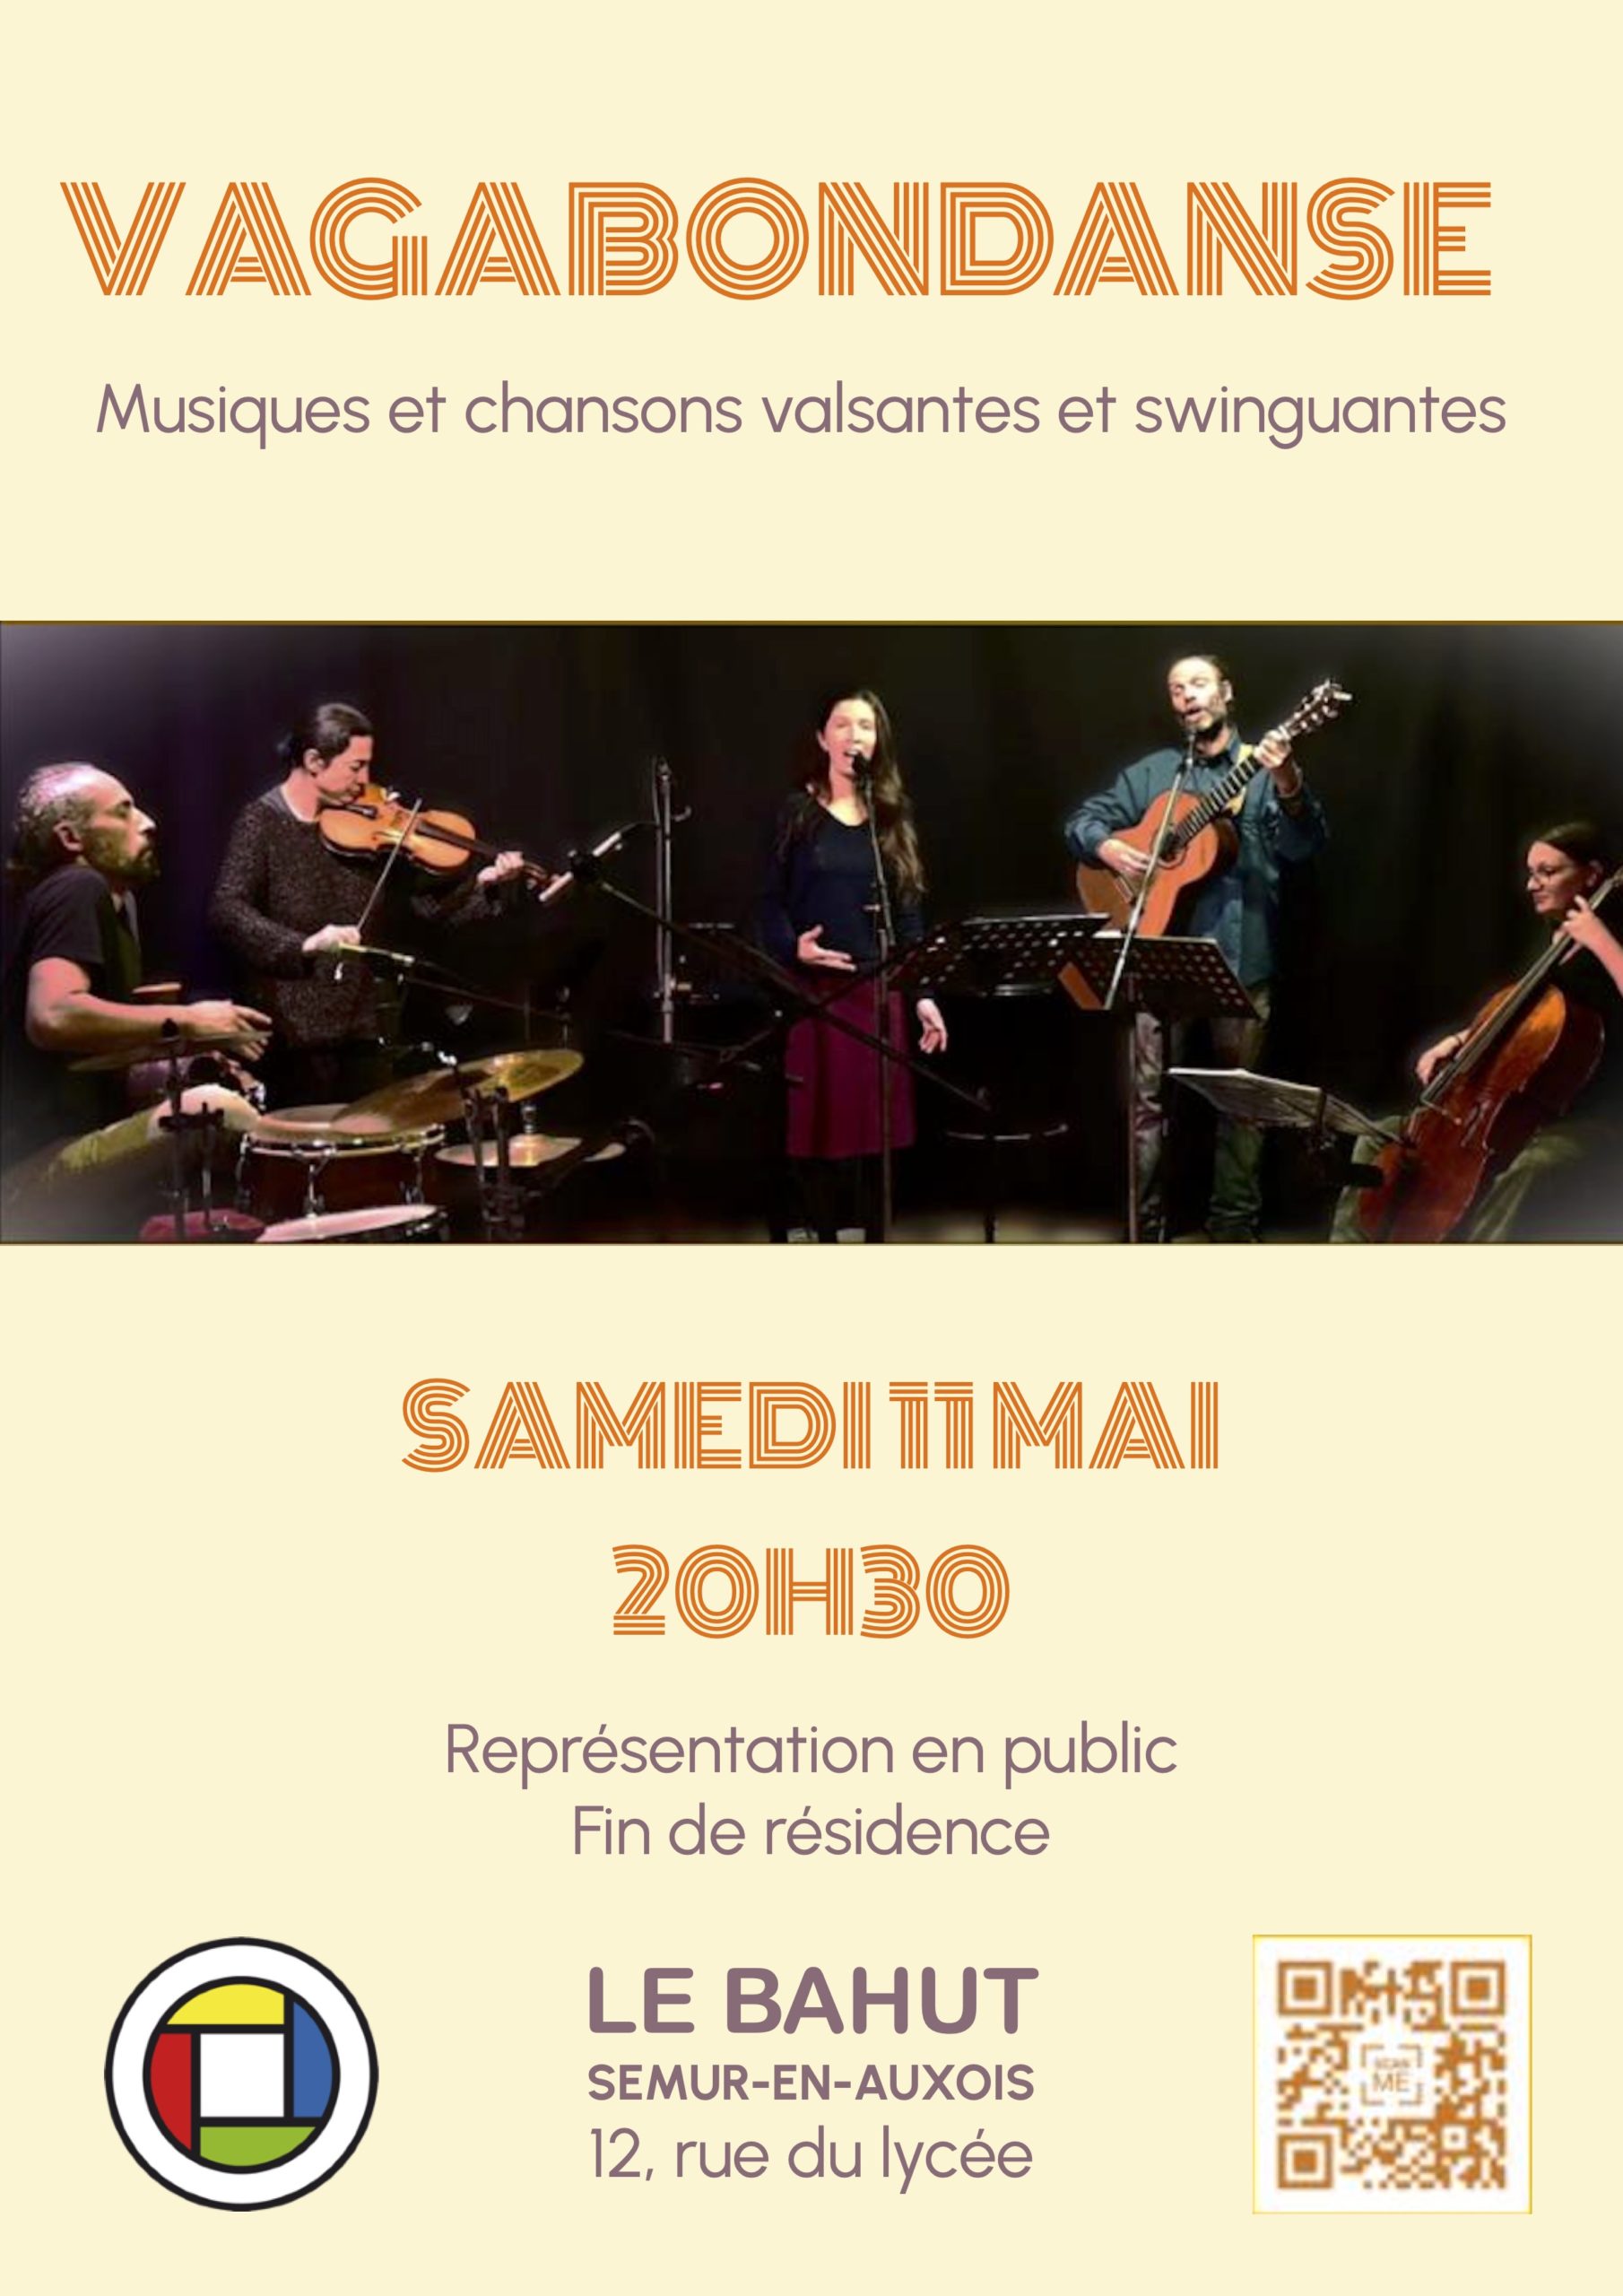 Affiche du concert de Vagabondanse au Bahut à Semur